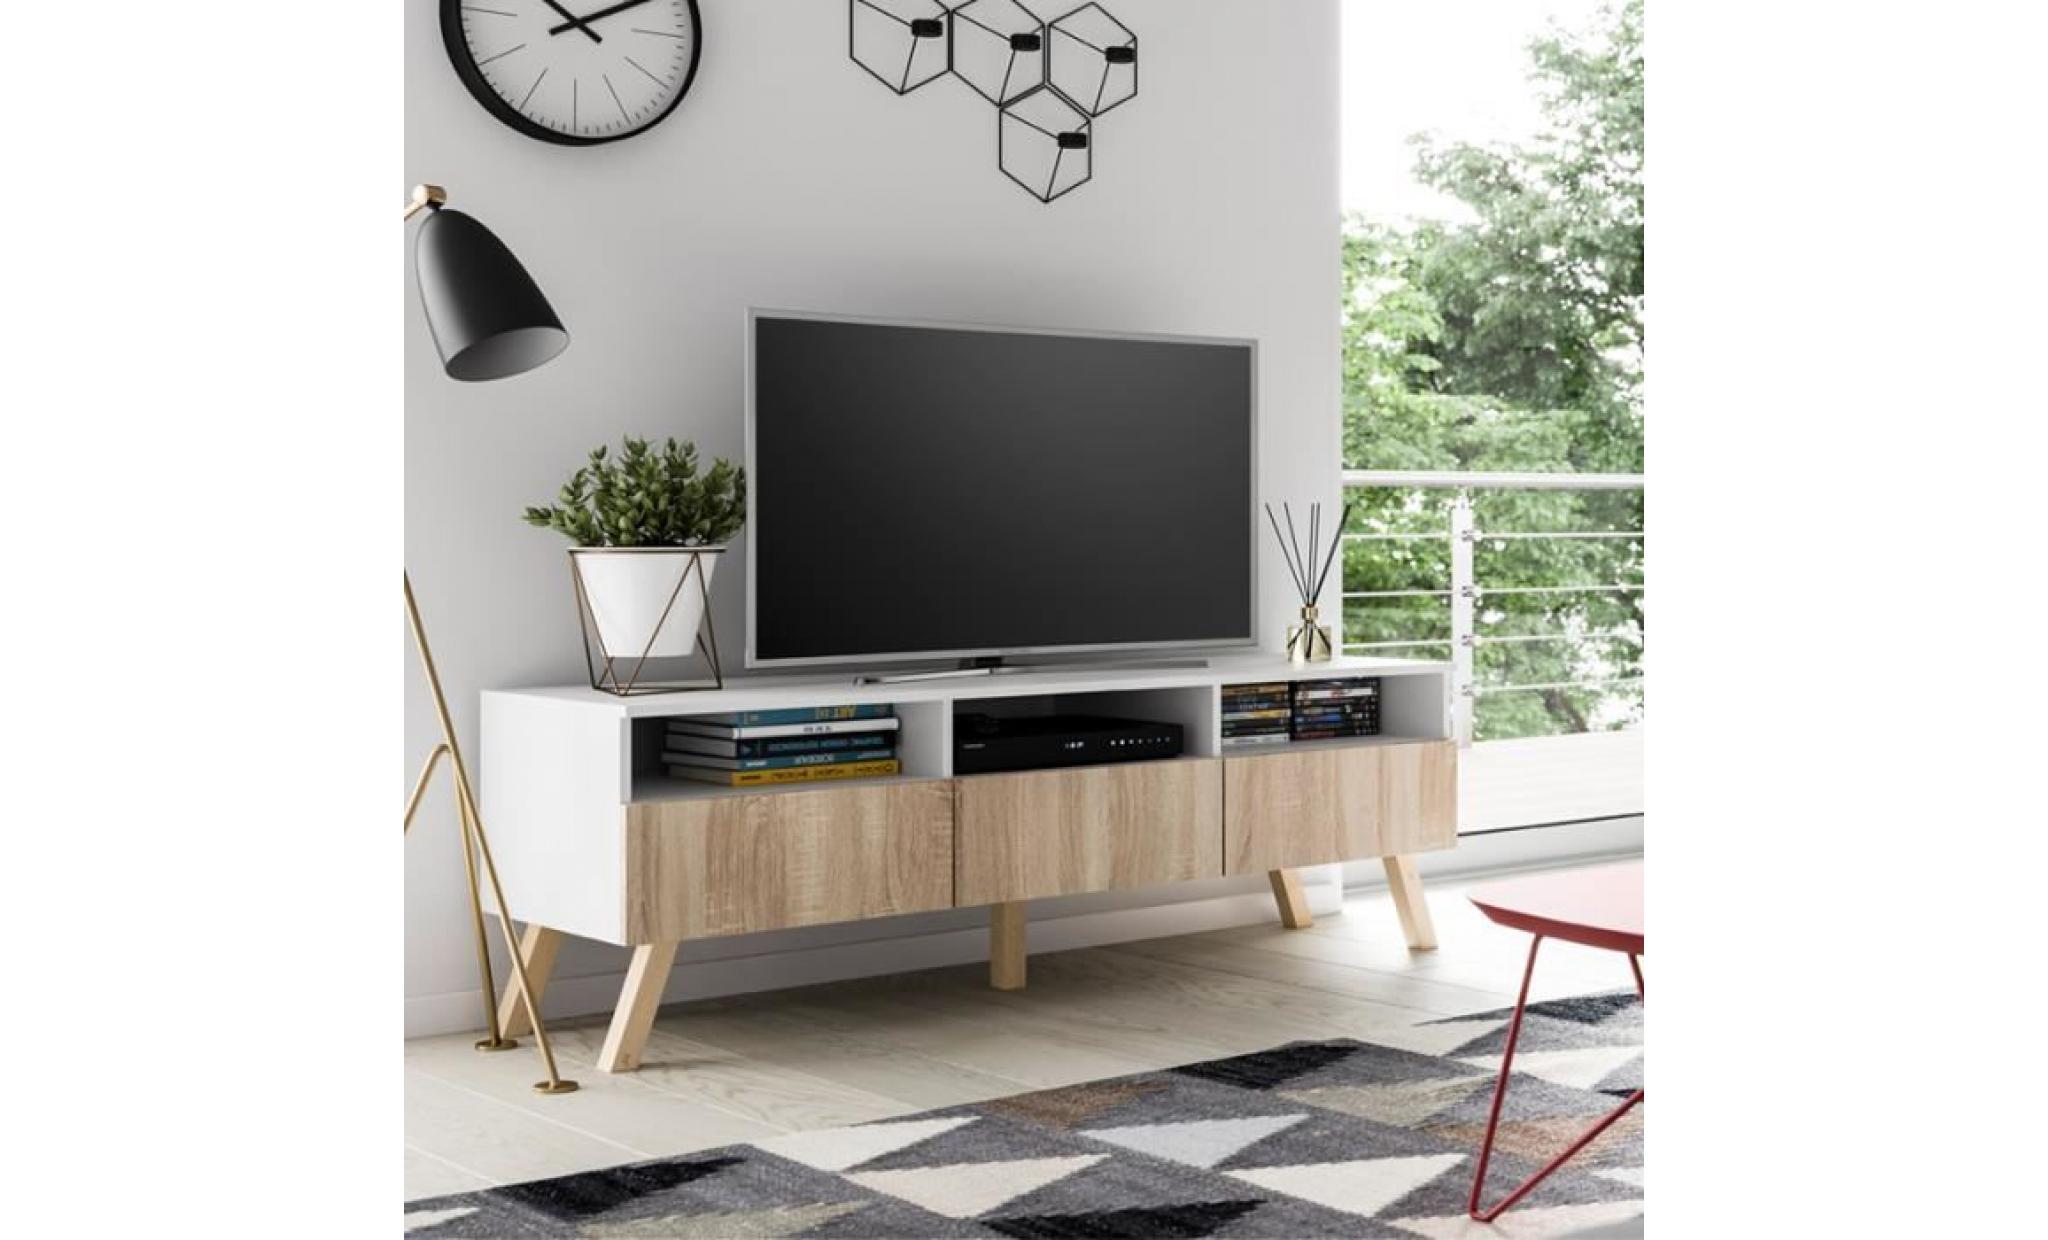 meuble tv / meuble salon   lavello bois   150 cm   blanc mat / effet chêne   sans led   style scandinave   style nordique